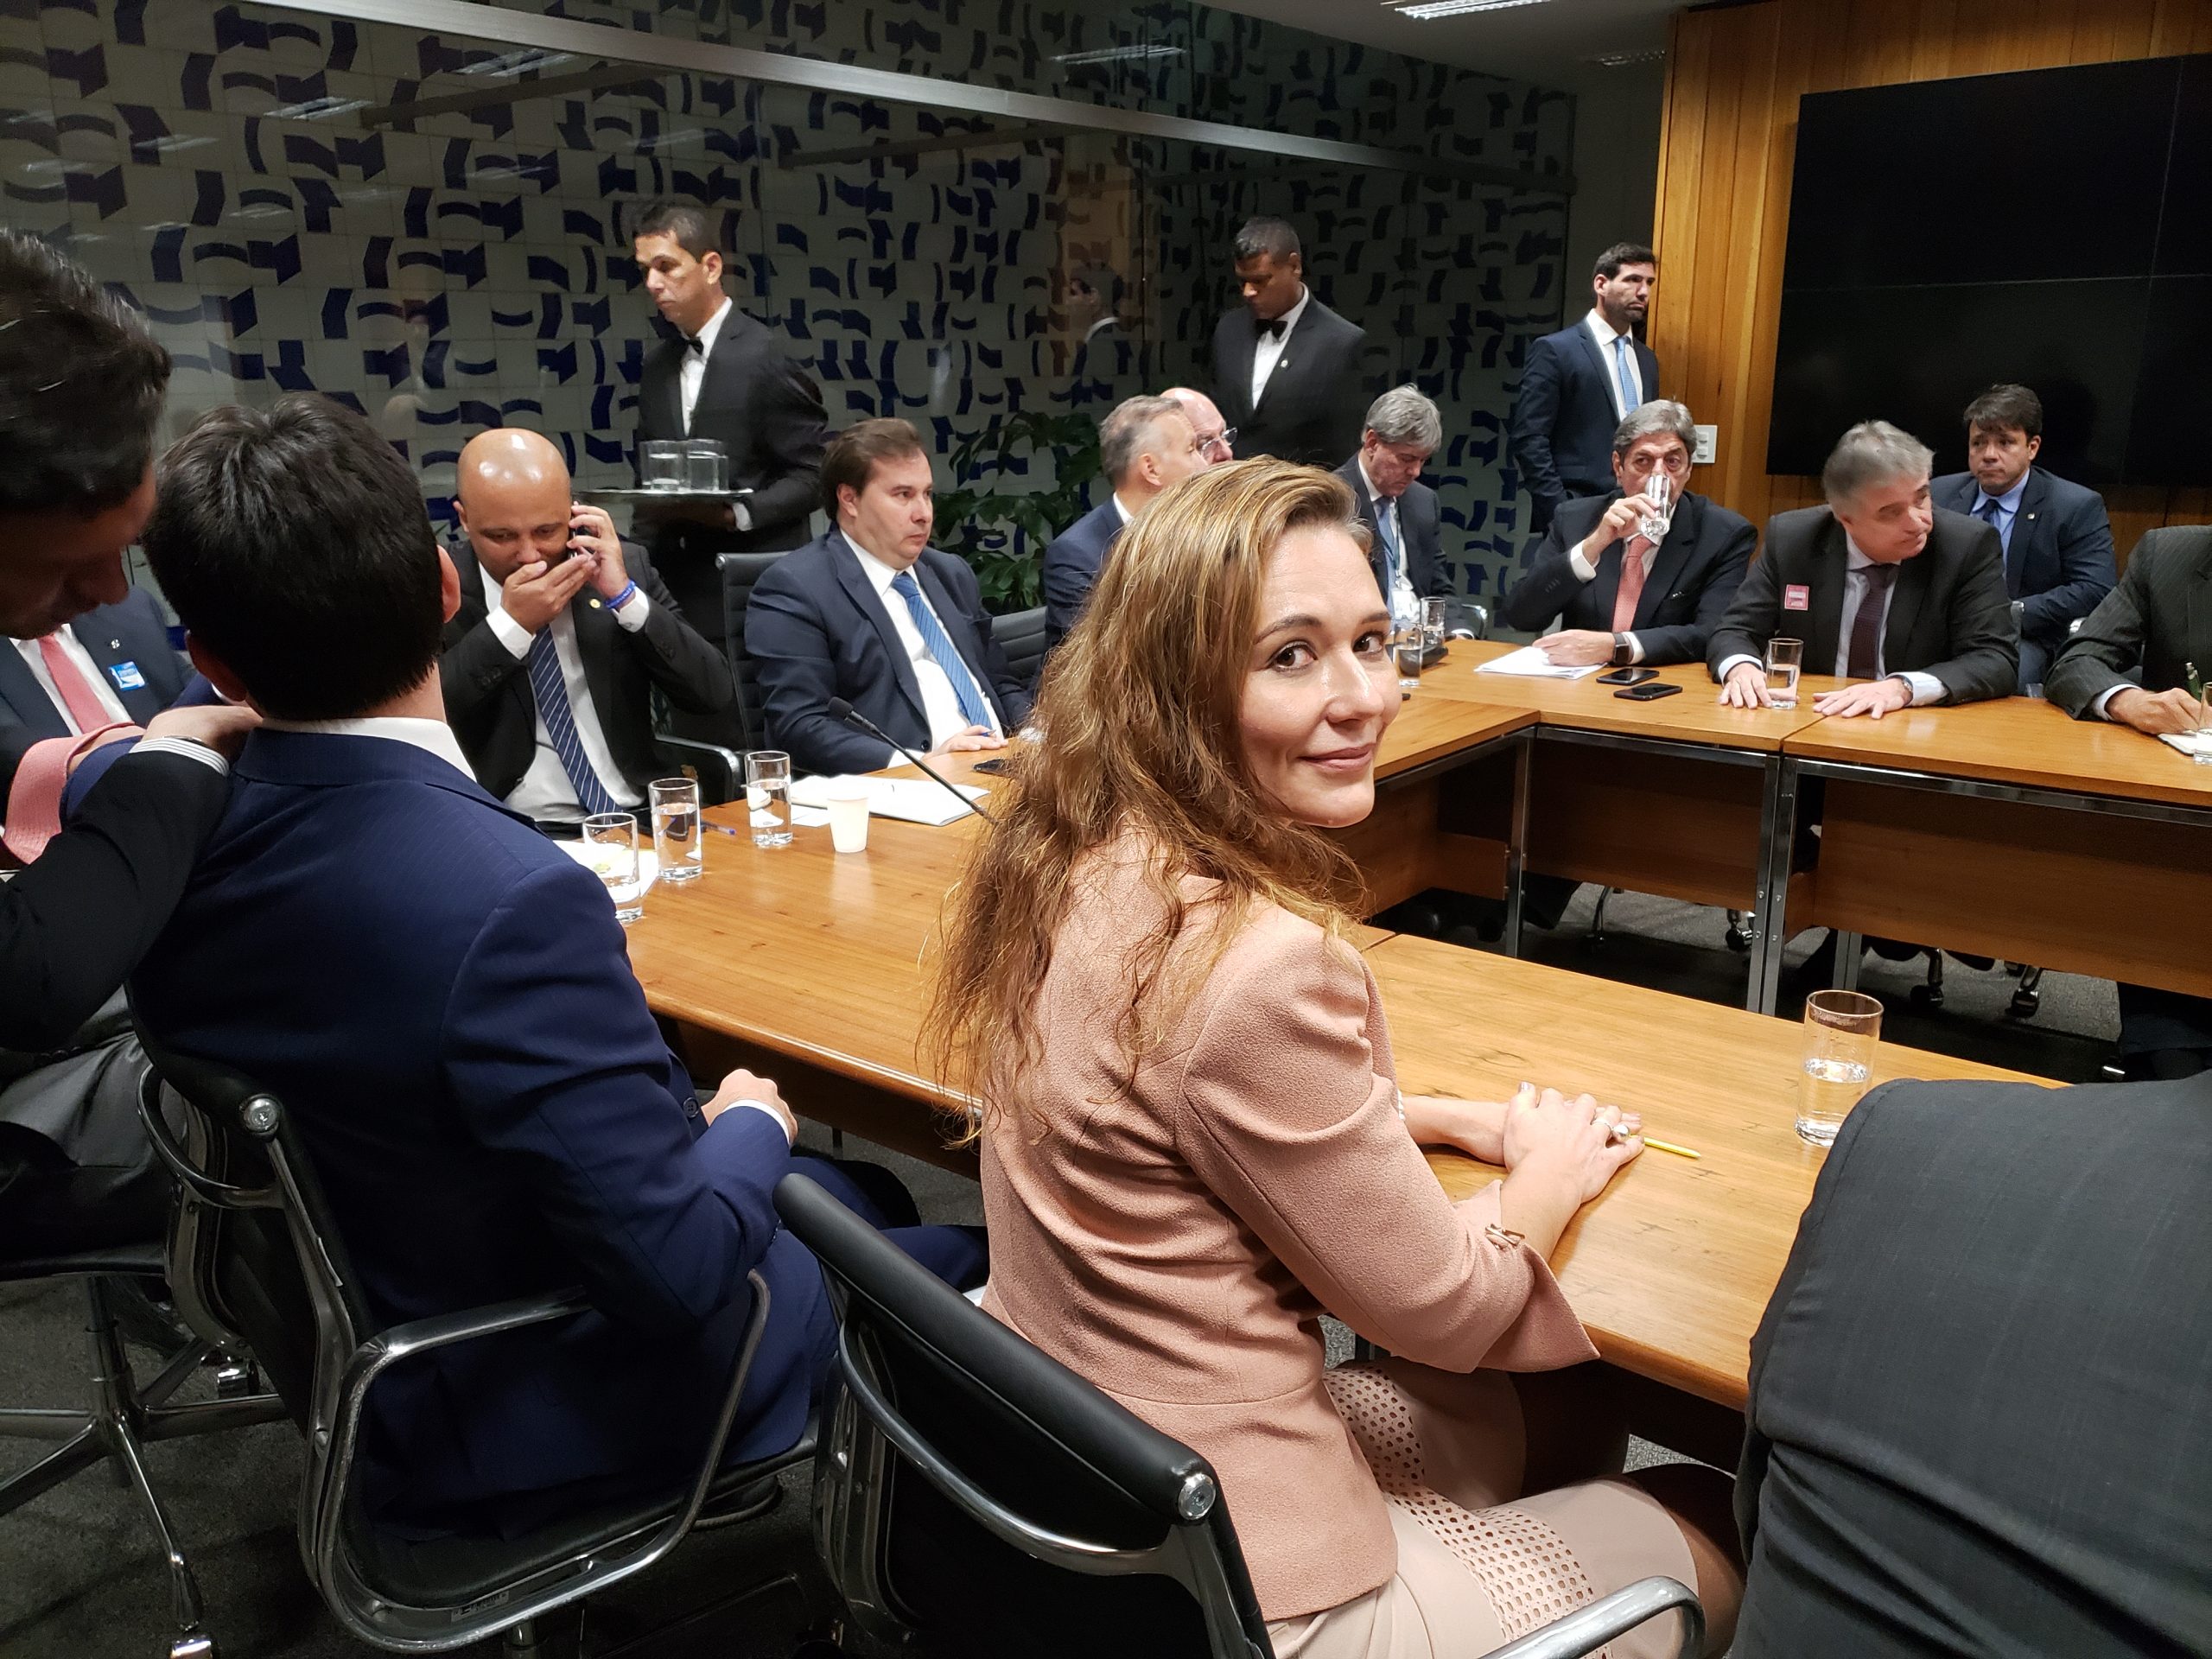 Cíntia é a única mulher entre os dirigentes do setor sucroenergético (Foto: Arquivo pessoal)